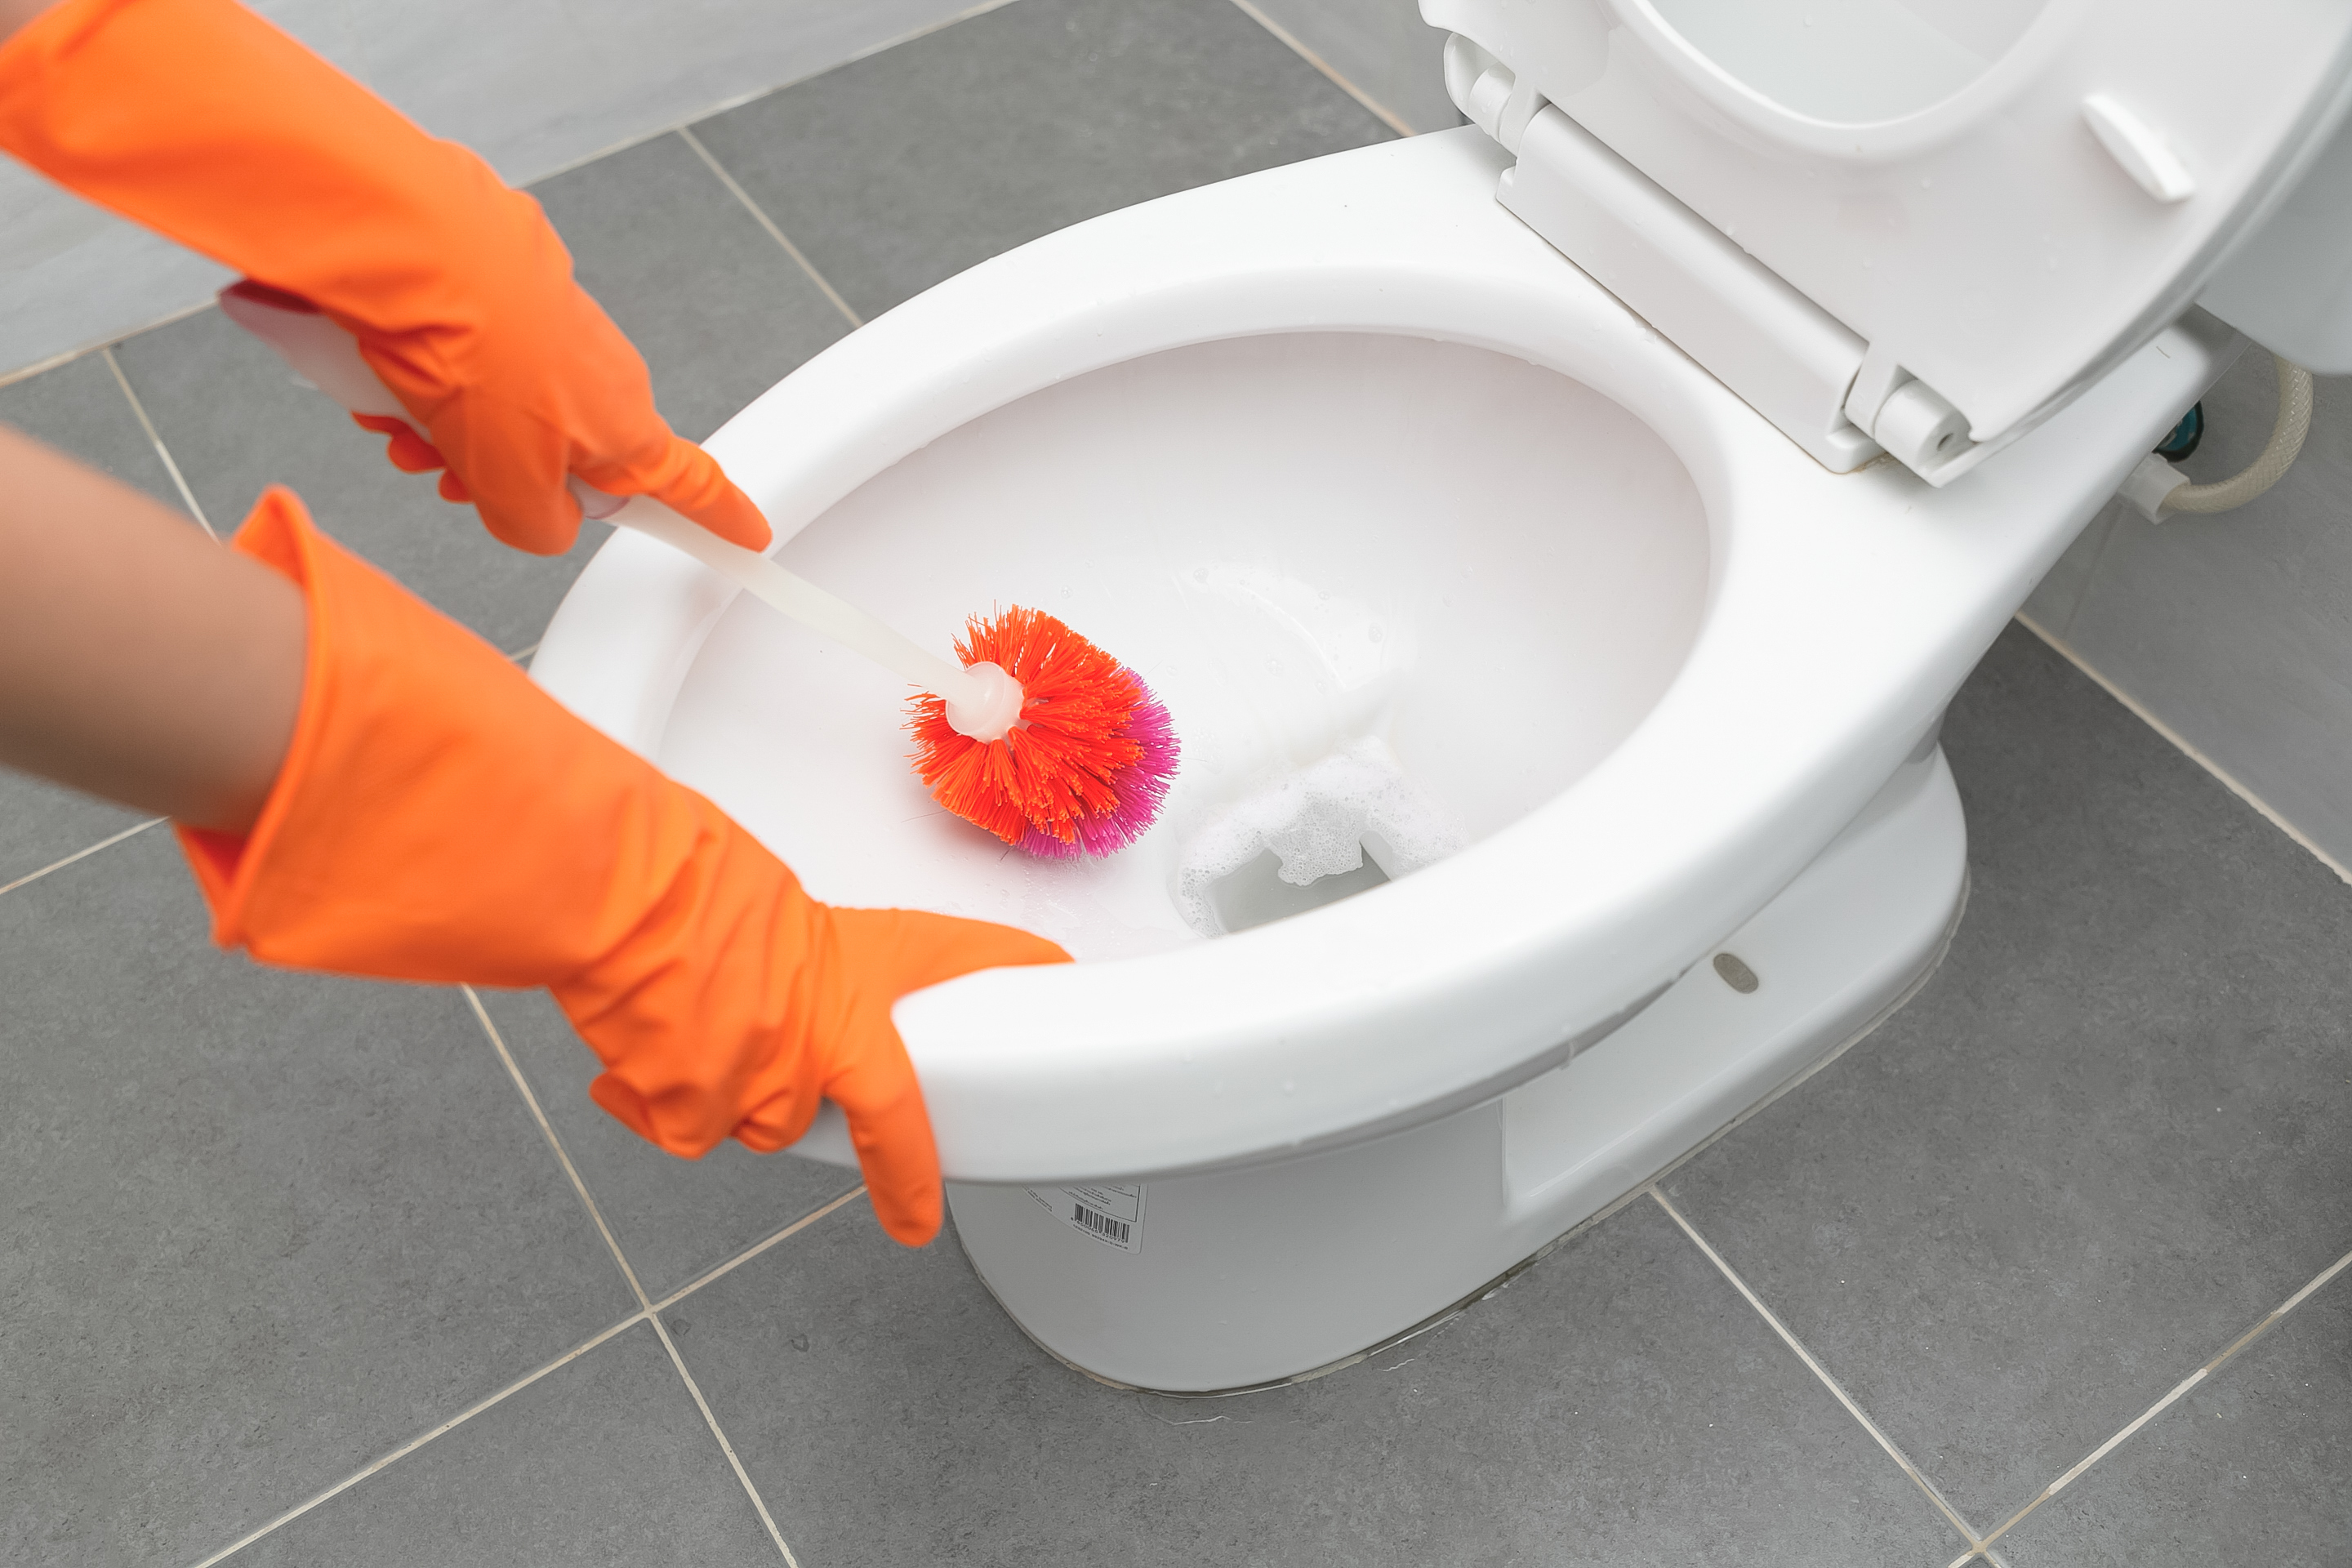 Te is kihagyod ezt a három dolgot WC-tisztításnál? Akkor ezért nem lesz  hófehér a végeredmény, de ha ÍGY csinálod, akkor biztosan - kiskegyed.hu